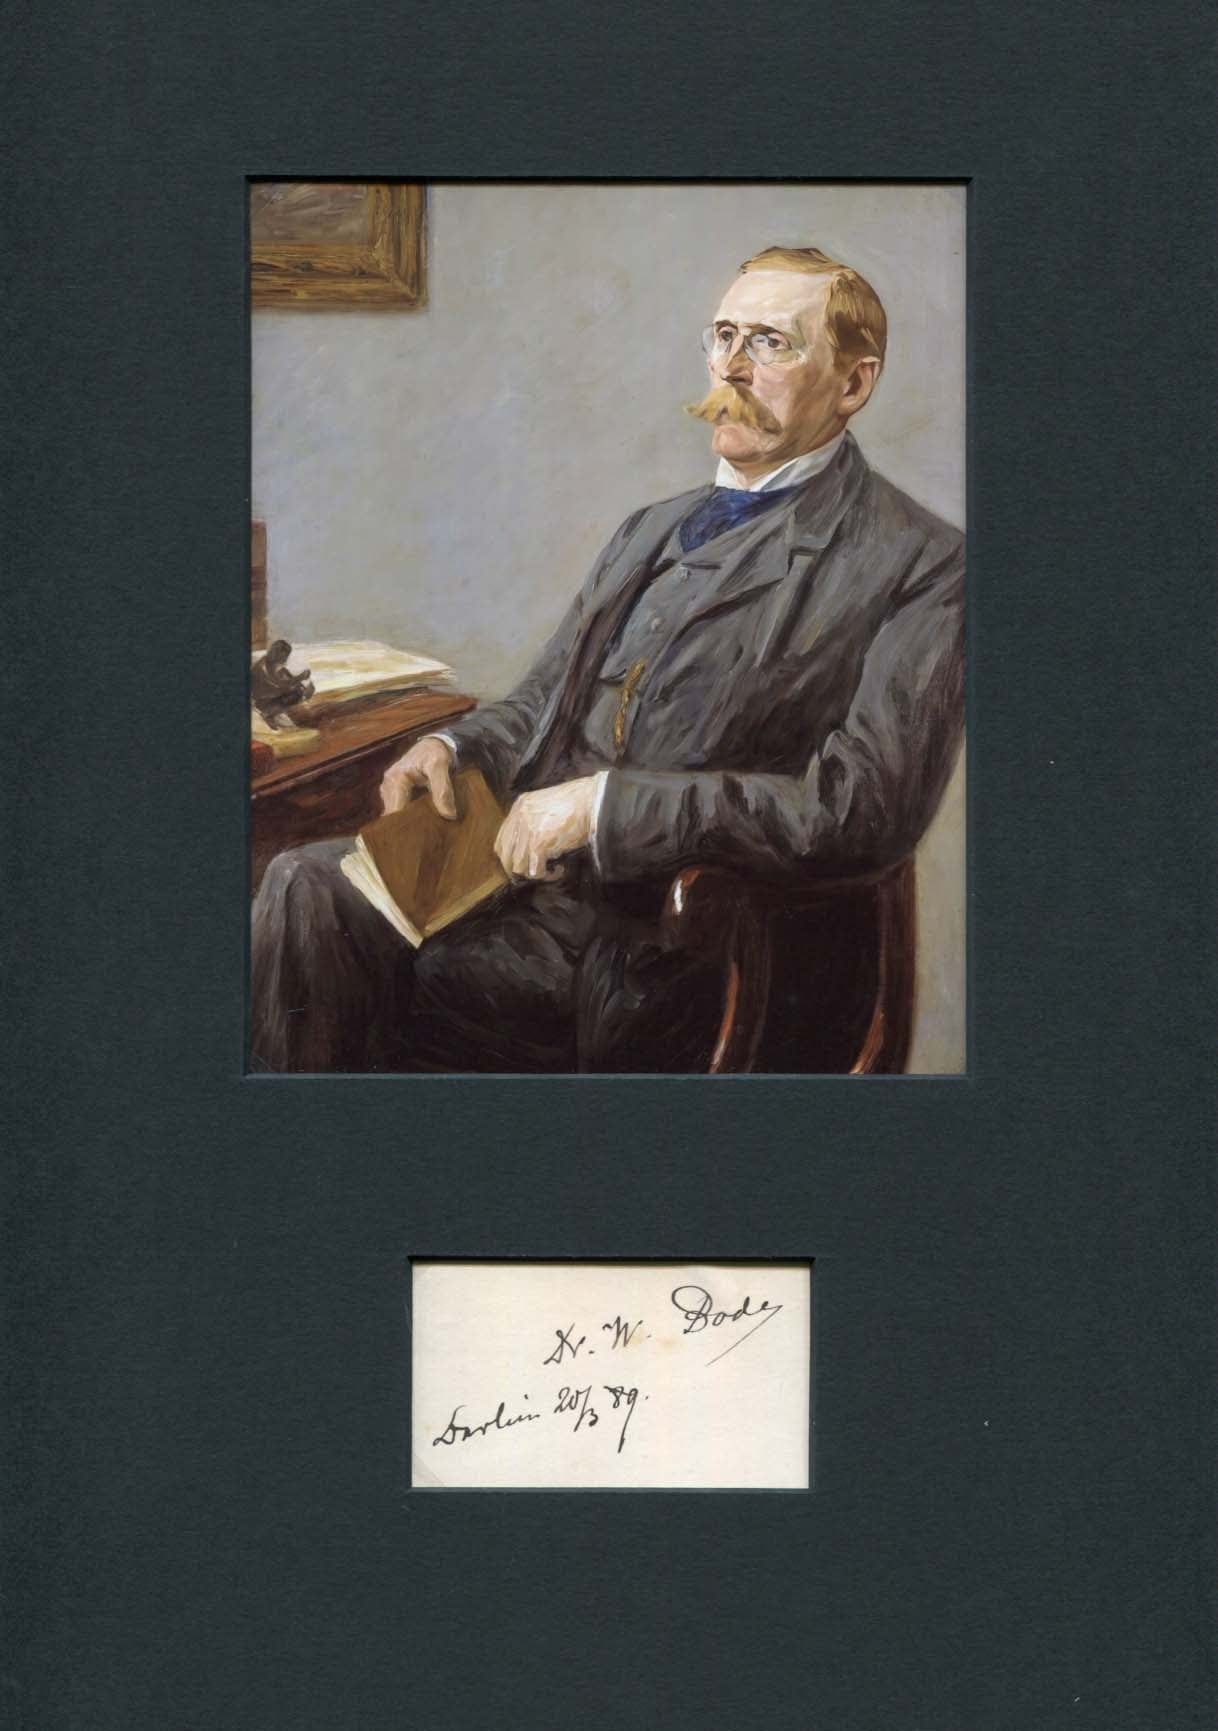 Wilhelm von Bode Autograph Autogramm | ID 8197379883157